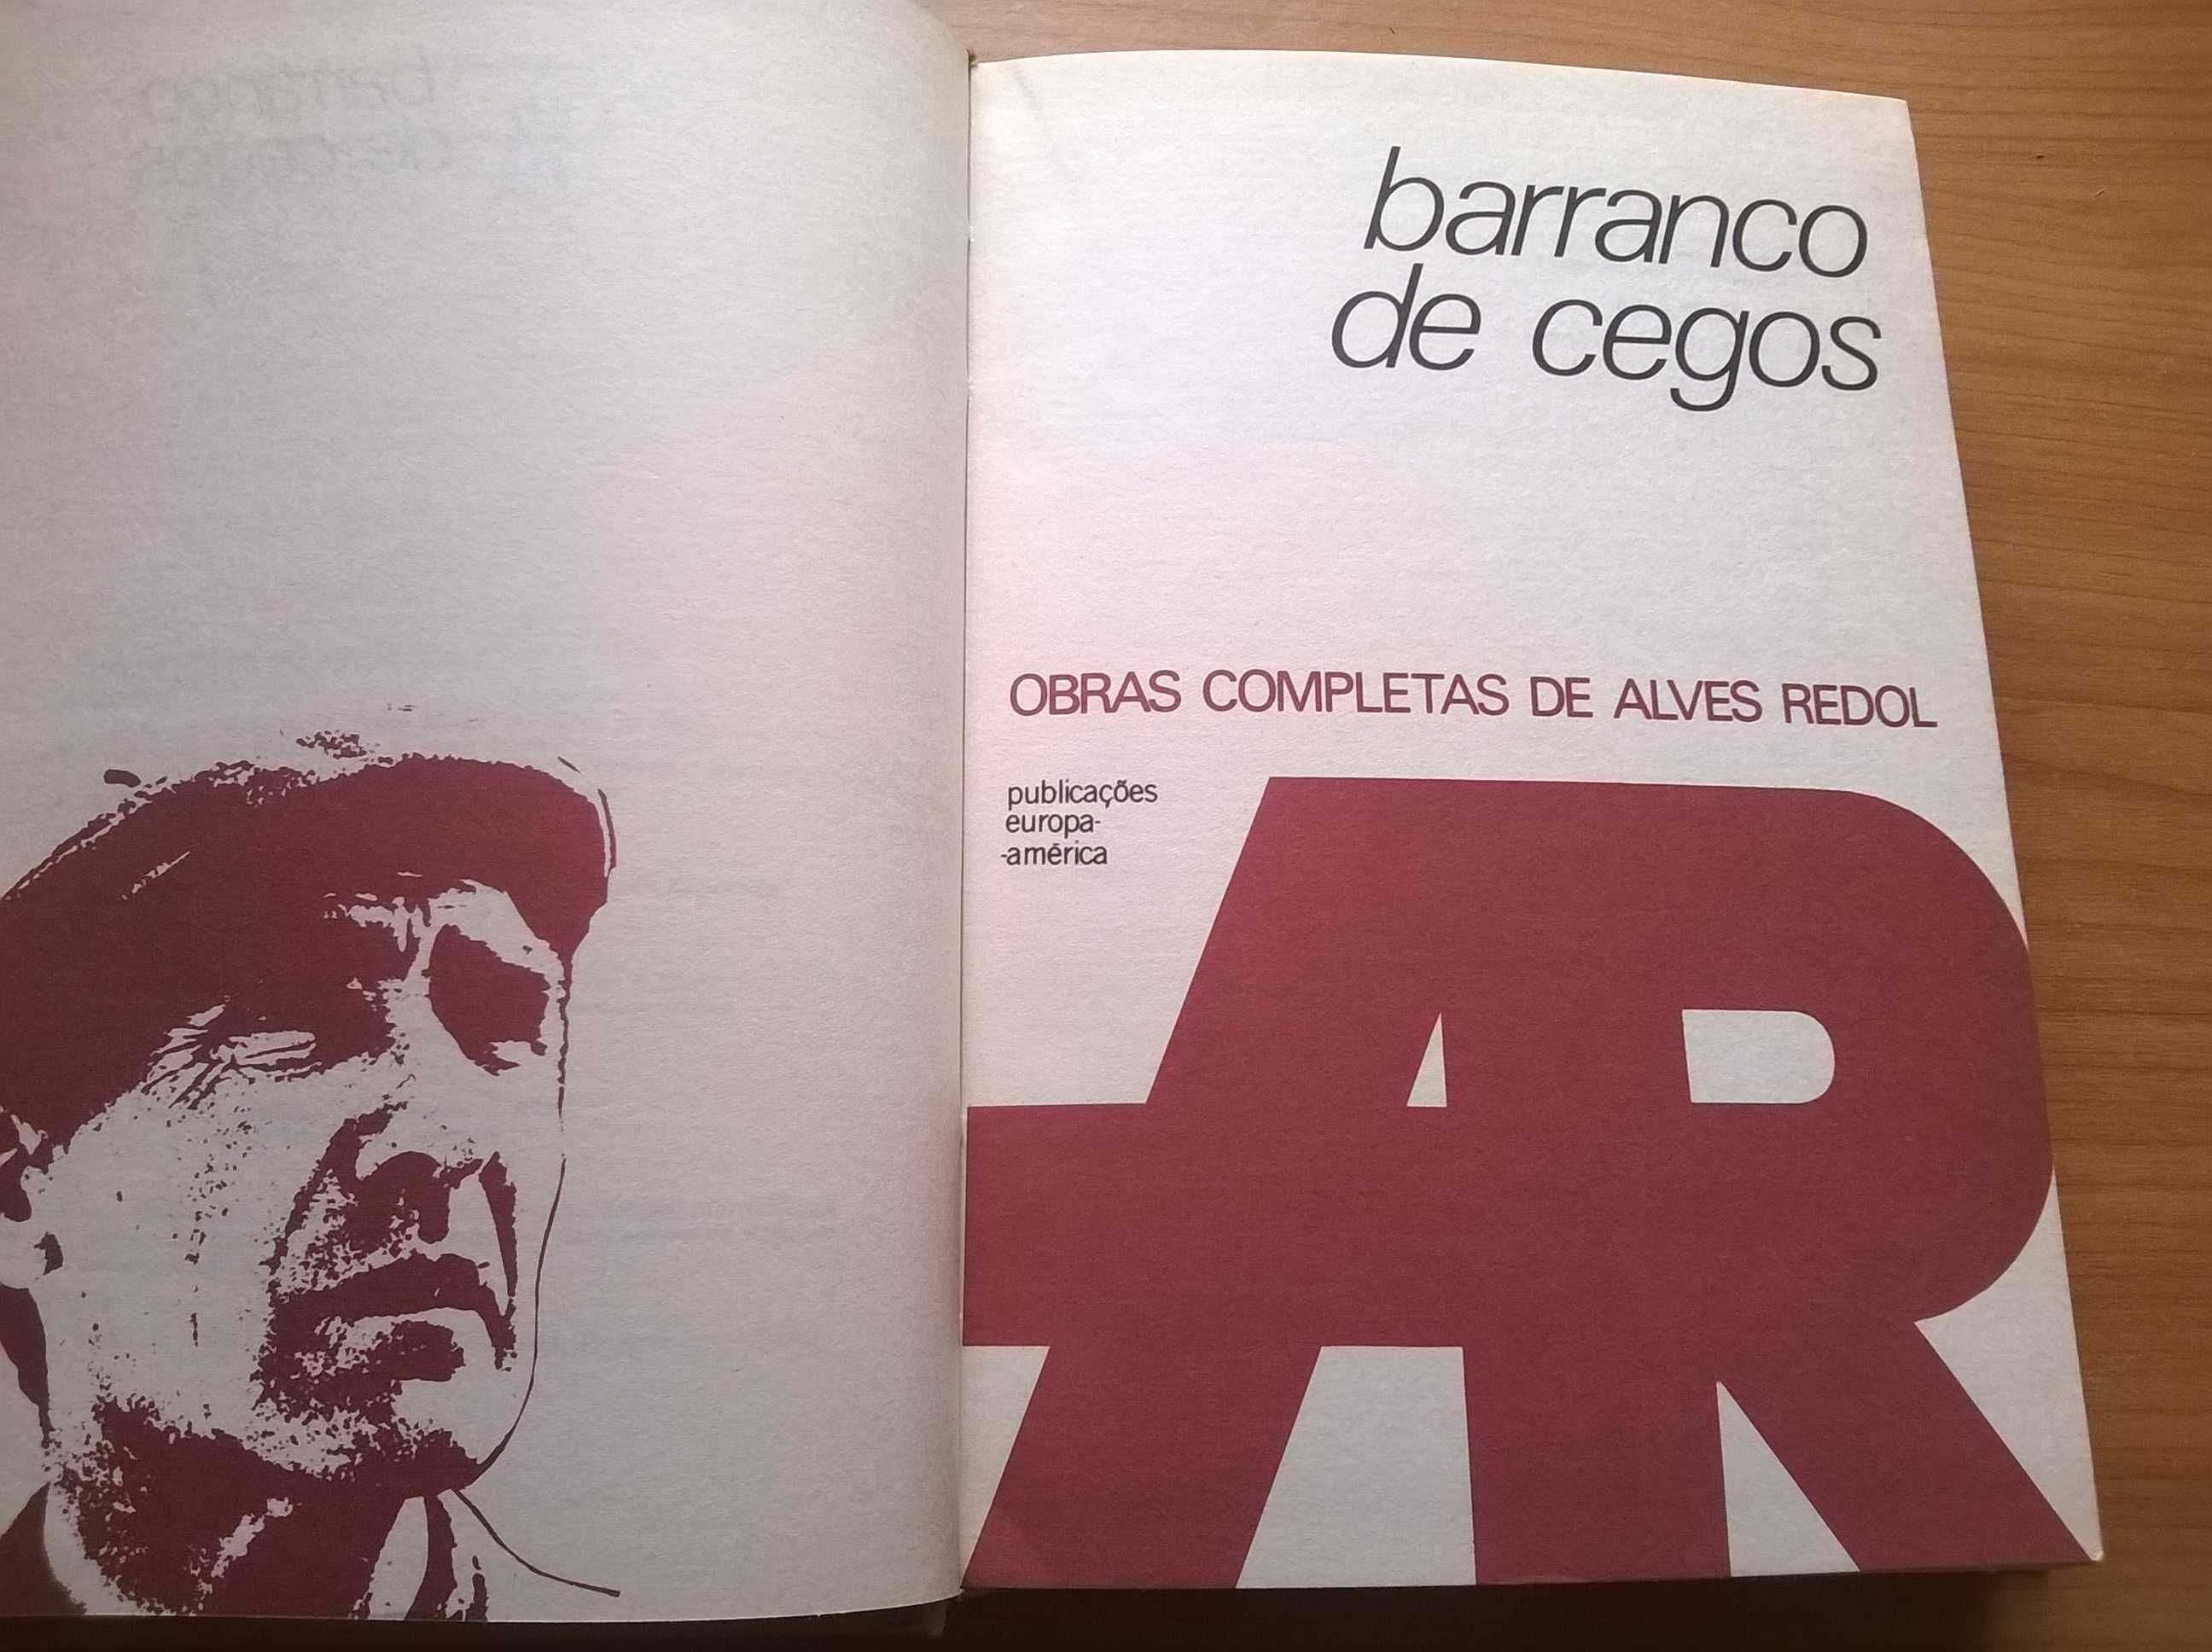 Barranco de Cegos - Alves Redol (portes grátis)